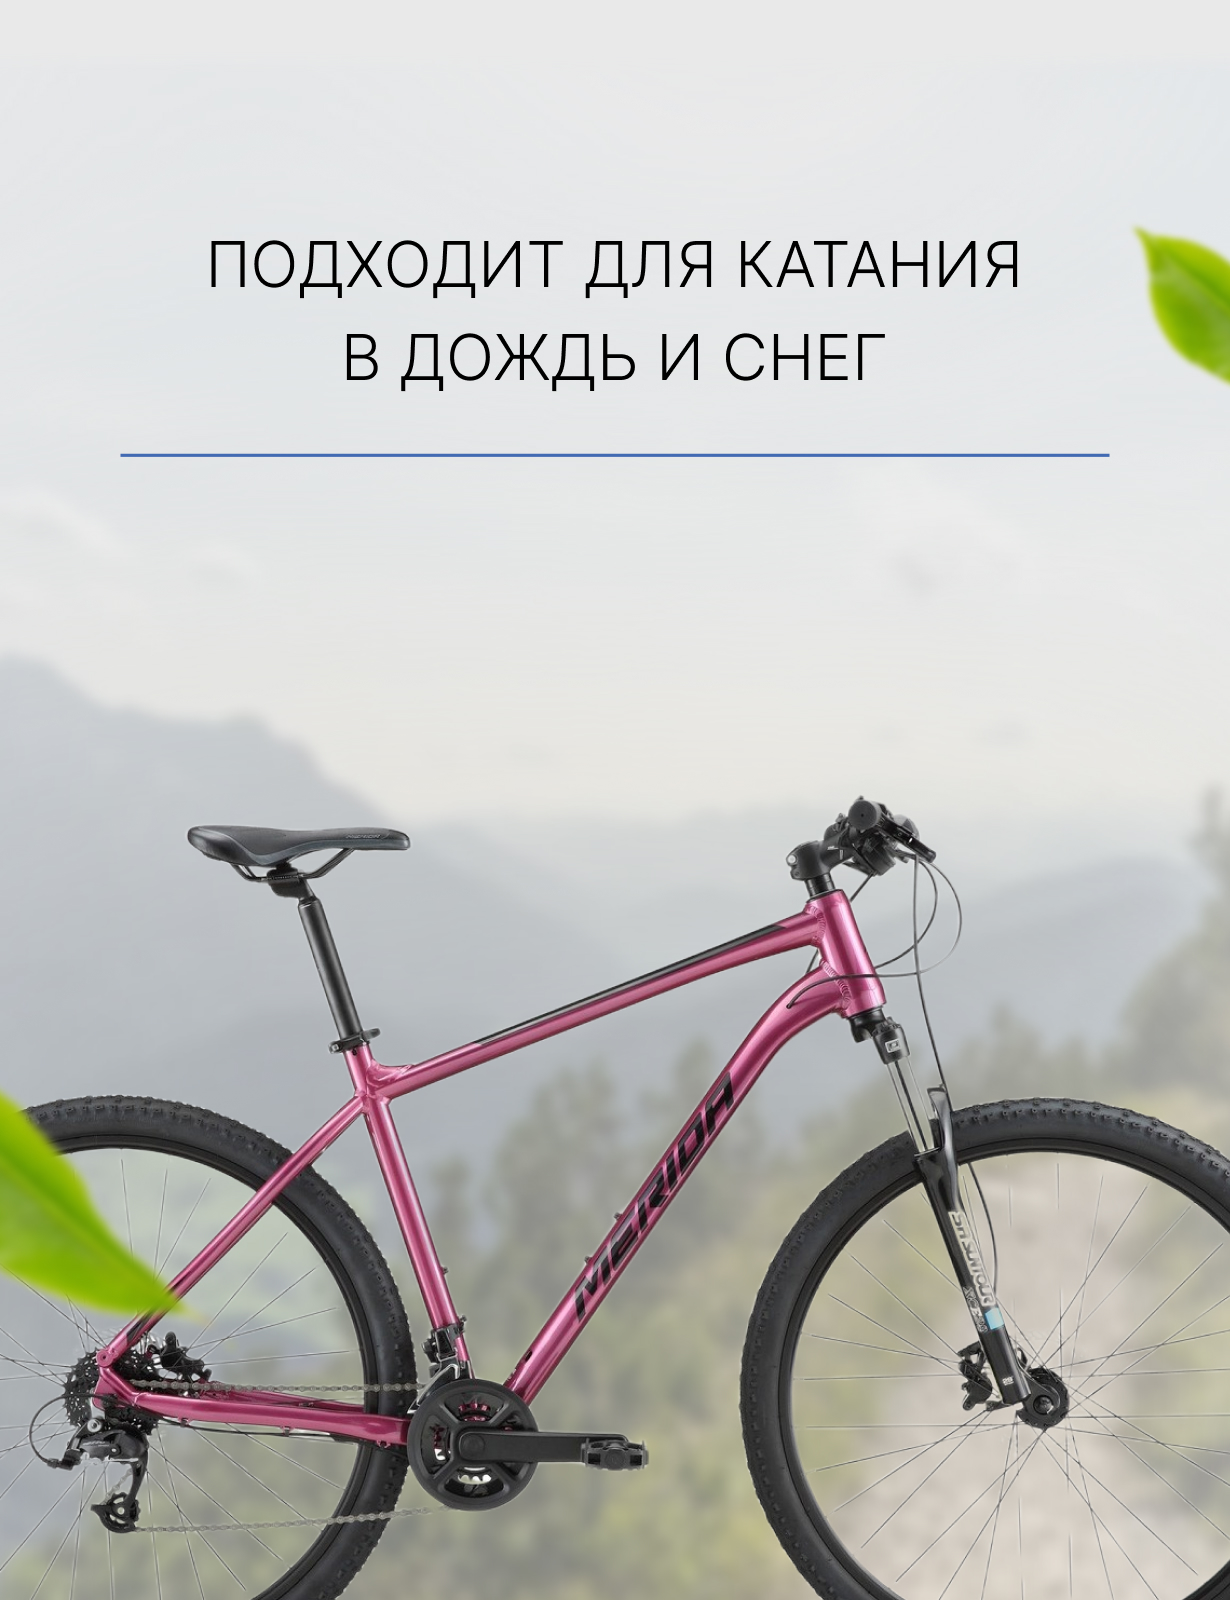 Горный велосипед Merida Big.Seven Limited 2.0, год 2022, цвет Фиолетовый-Черный, ростовка 19